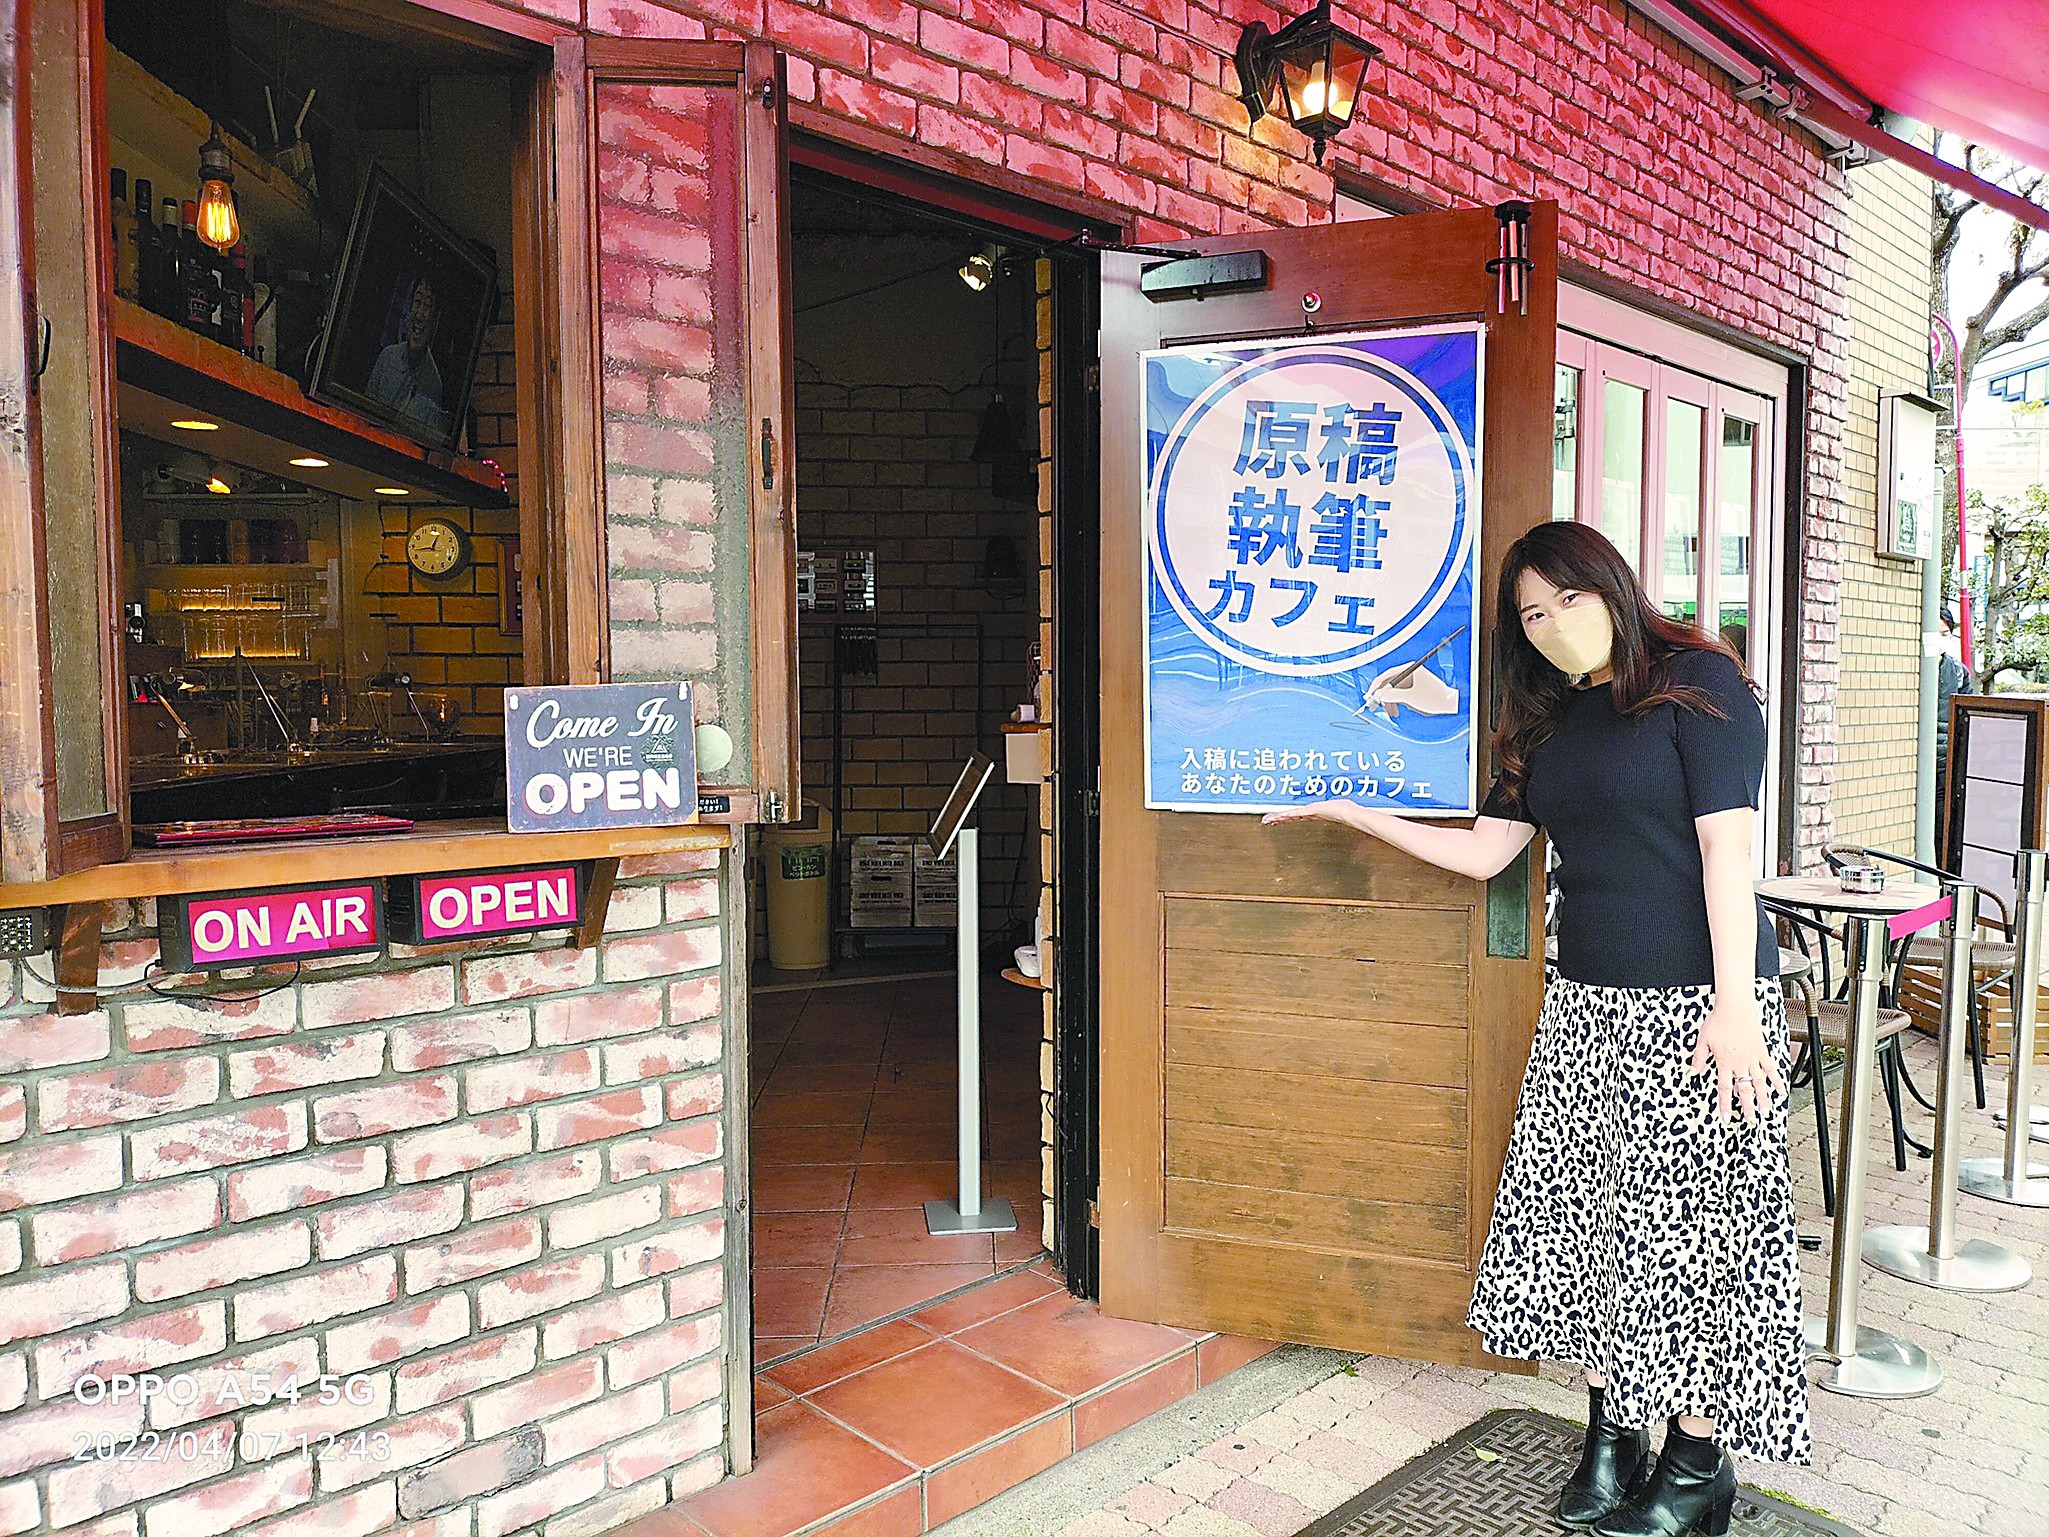 日本有家咖啡店专治写稿拖延症